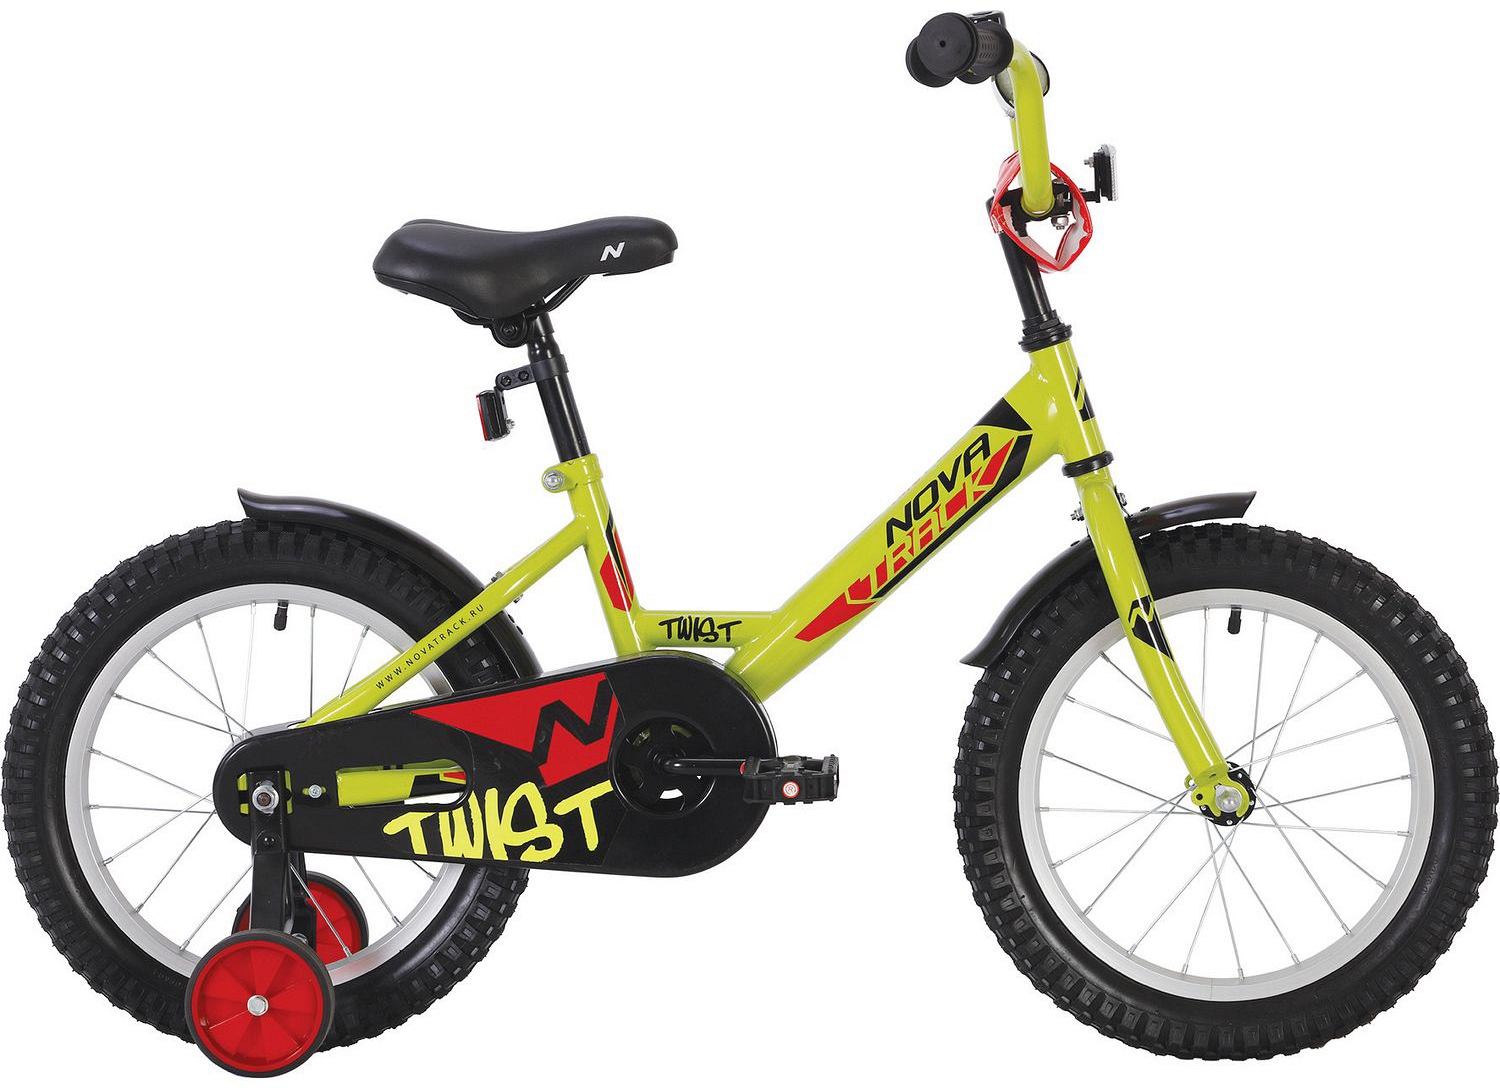  Отзывы о Детском велосипеде Novatrack Twist 18 2020